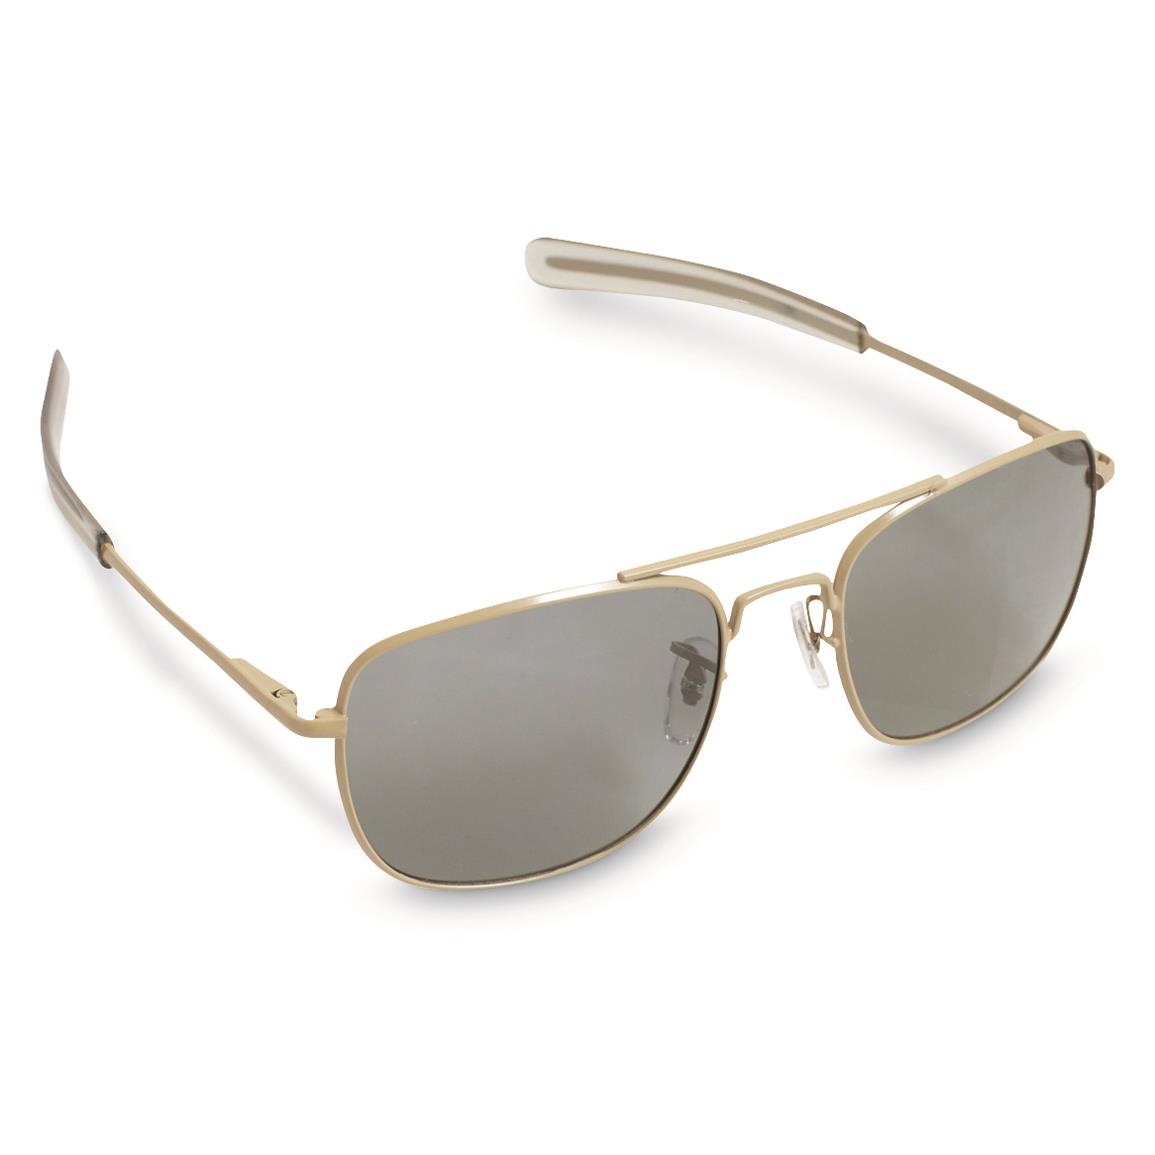 HUMVEE Men's Pilot Polarized Sunglasses, Desert Tan